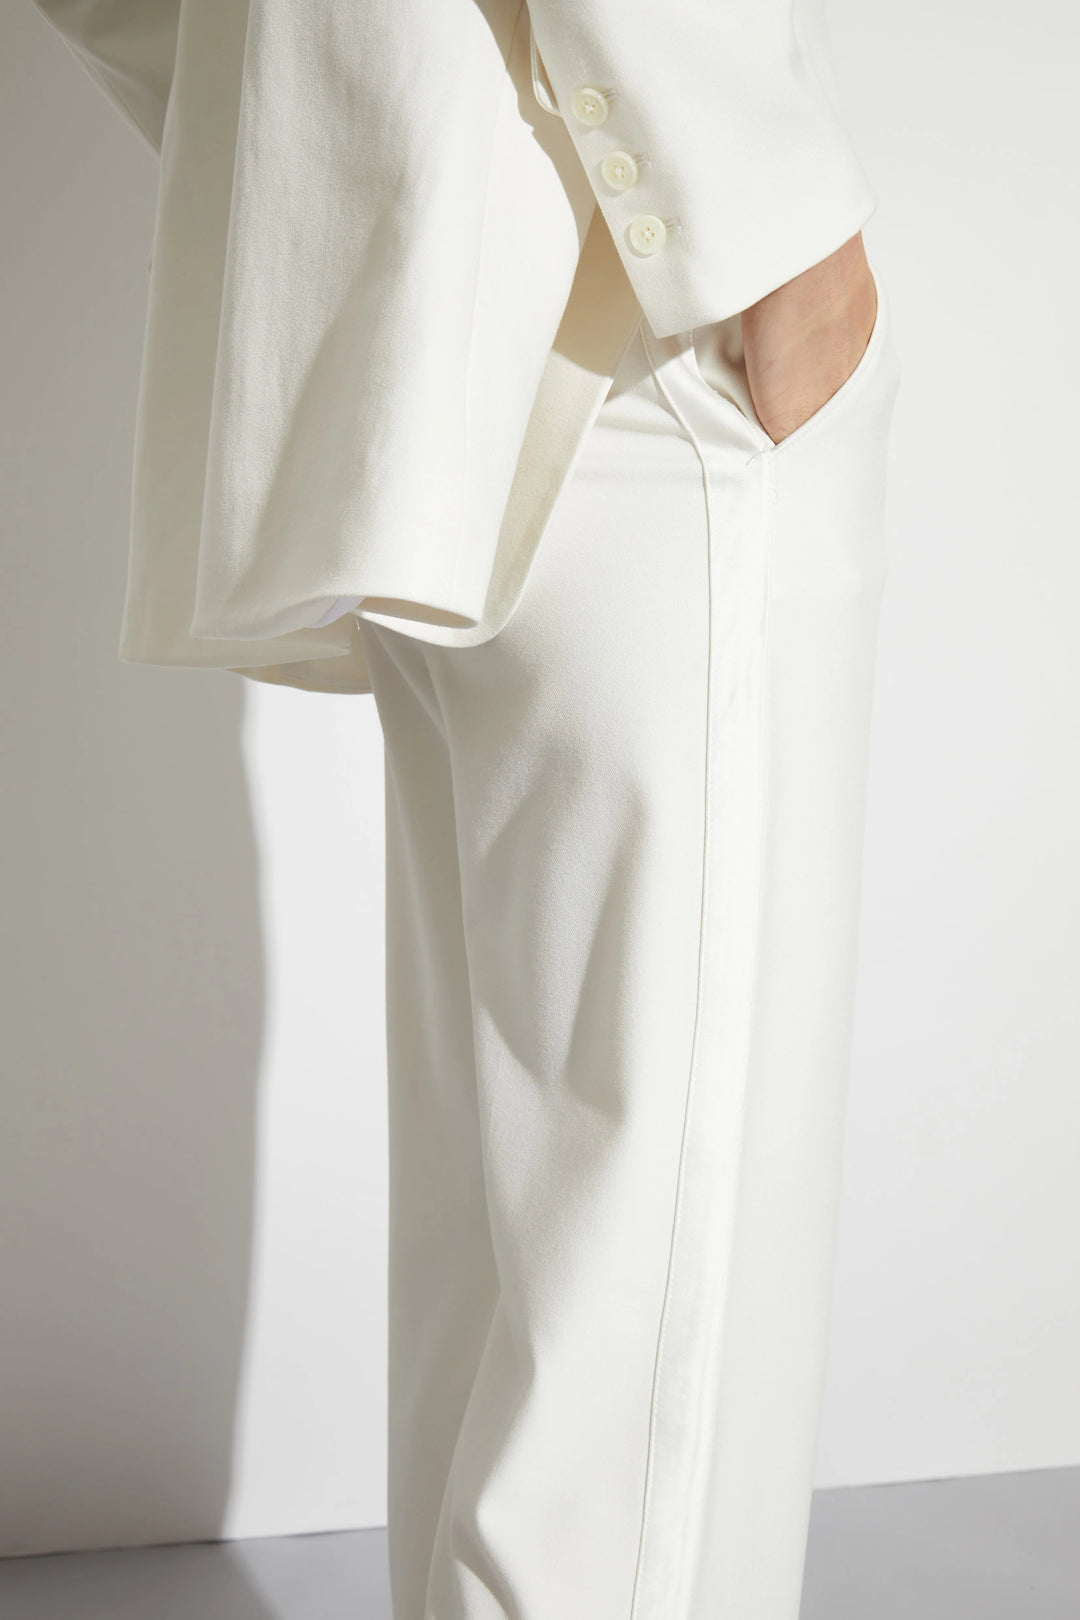 Saint Art New York - Dylan Tuxedo Jacket in White